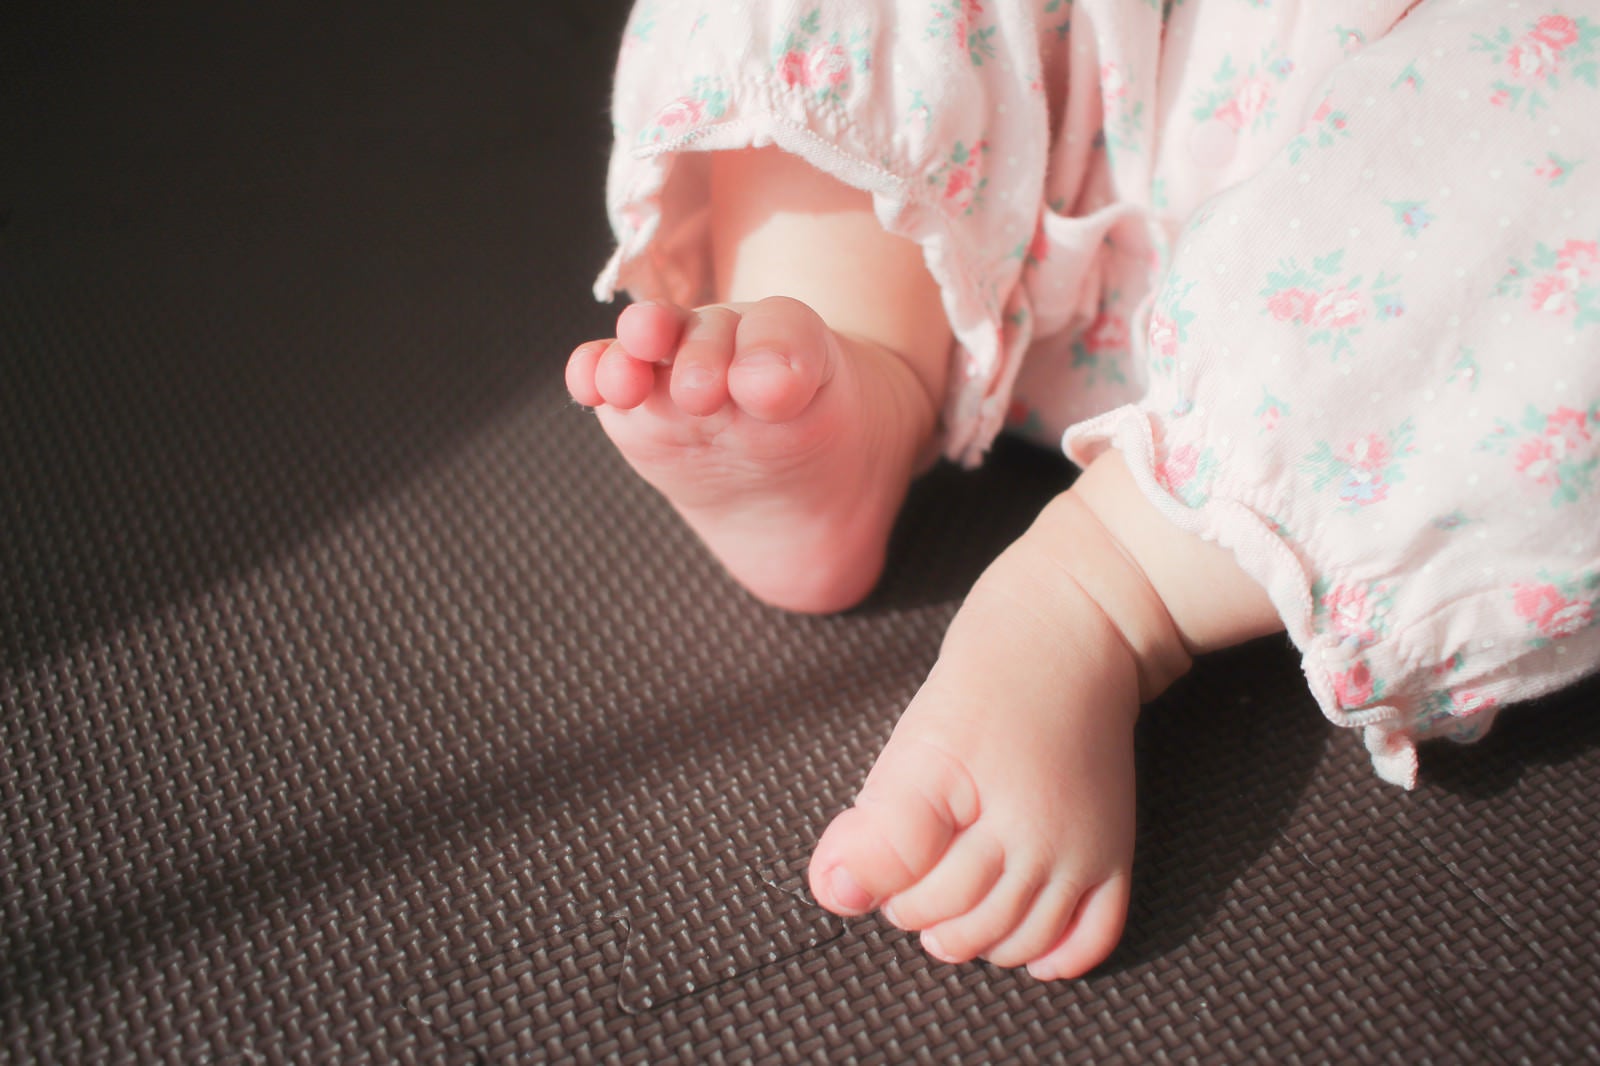 「むっちむちの赤ちゃんの両足」の写真